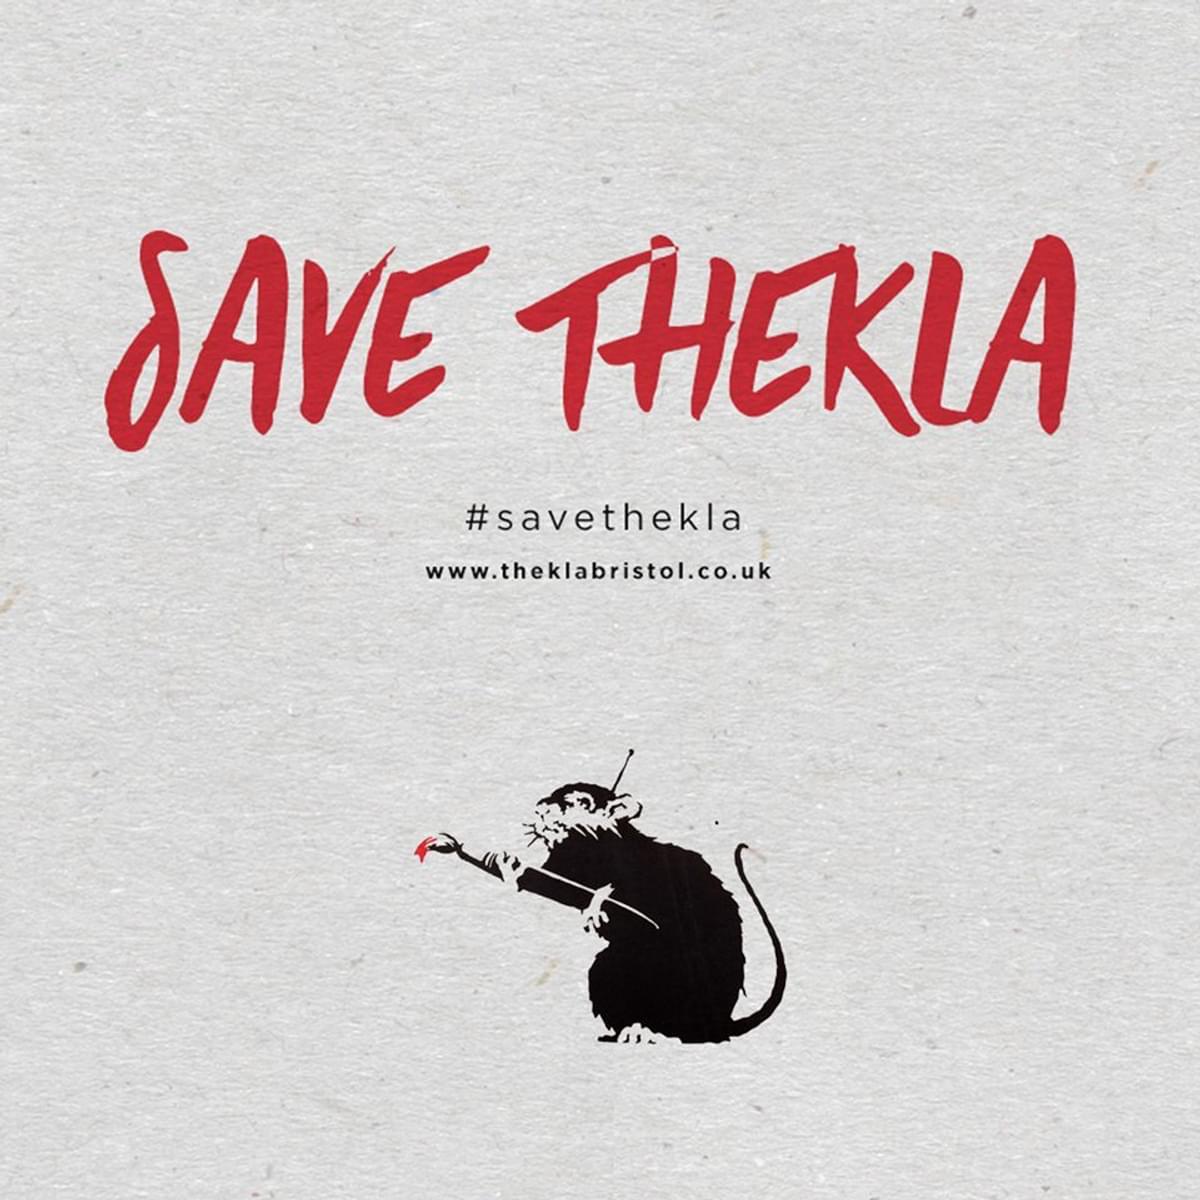 Save thekla banksy